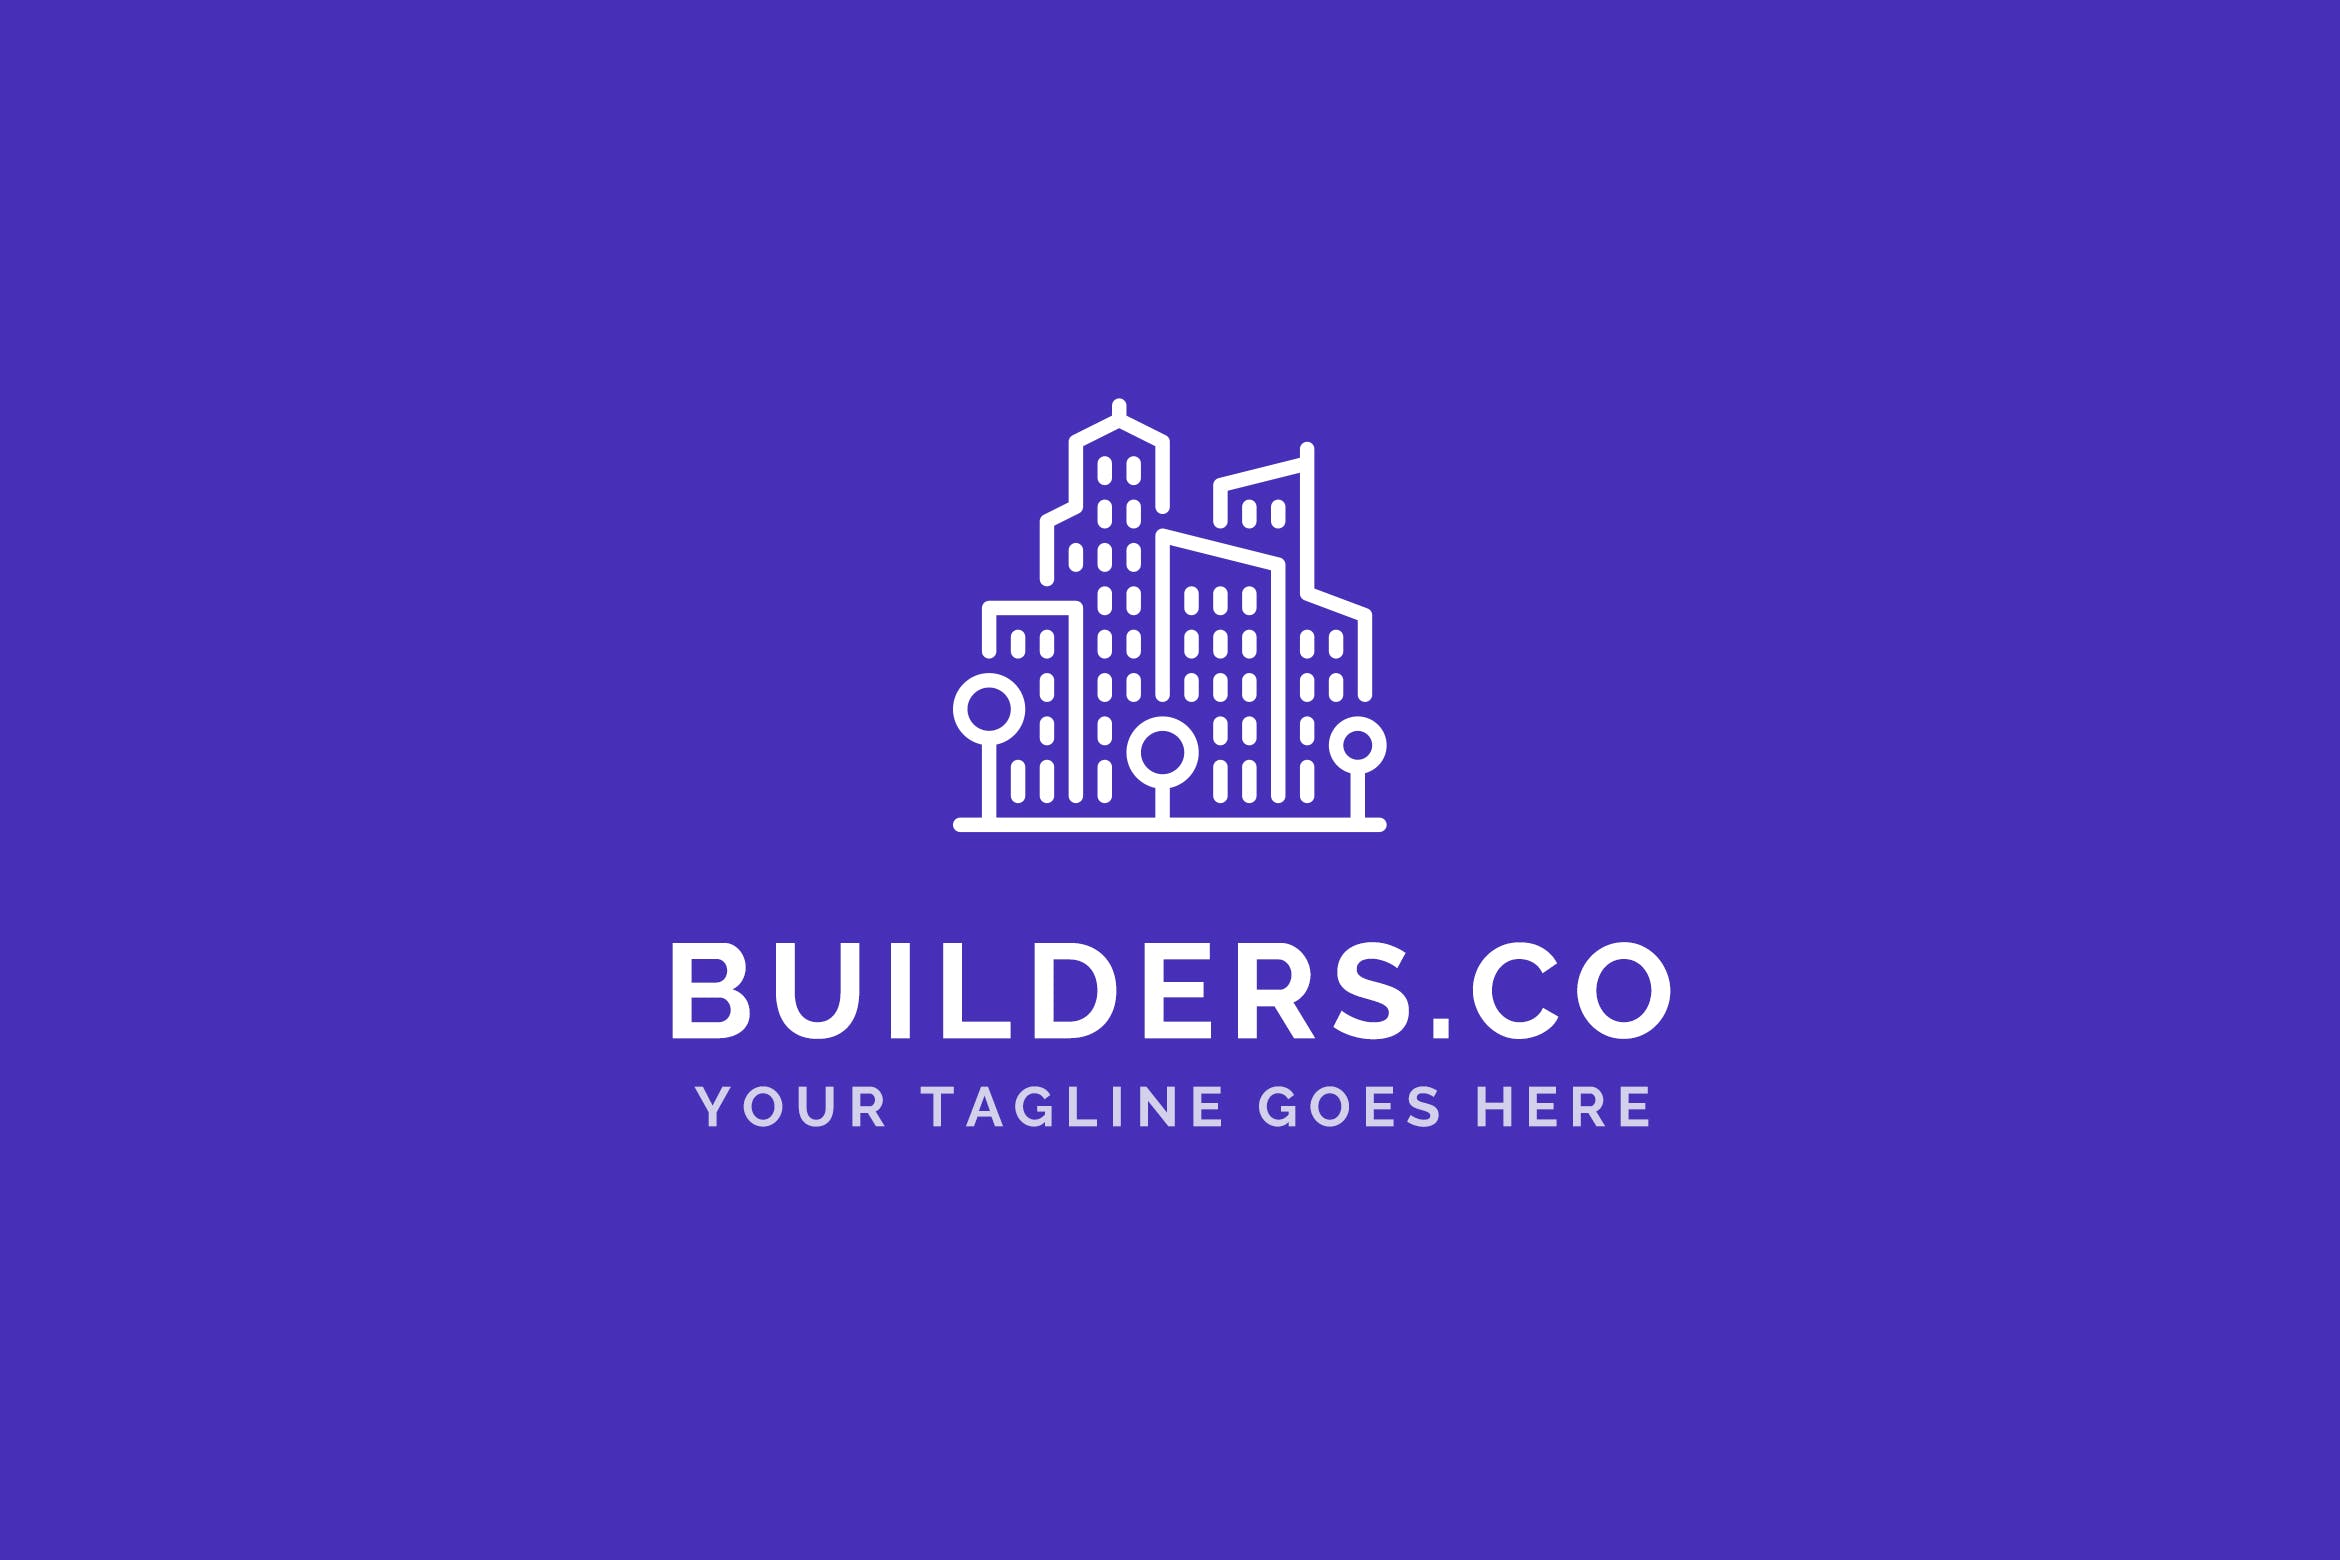 建筑基建/建筑设计策划公司Logo设计蚂蚁素材精选模板 Builders Co – Construction Company Logo Template插图